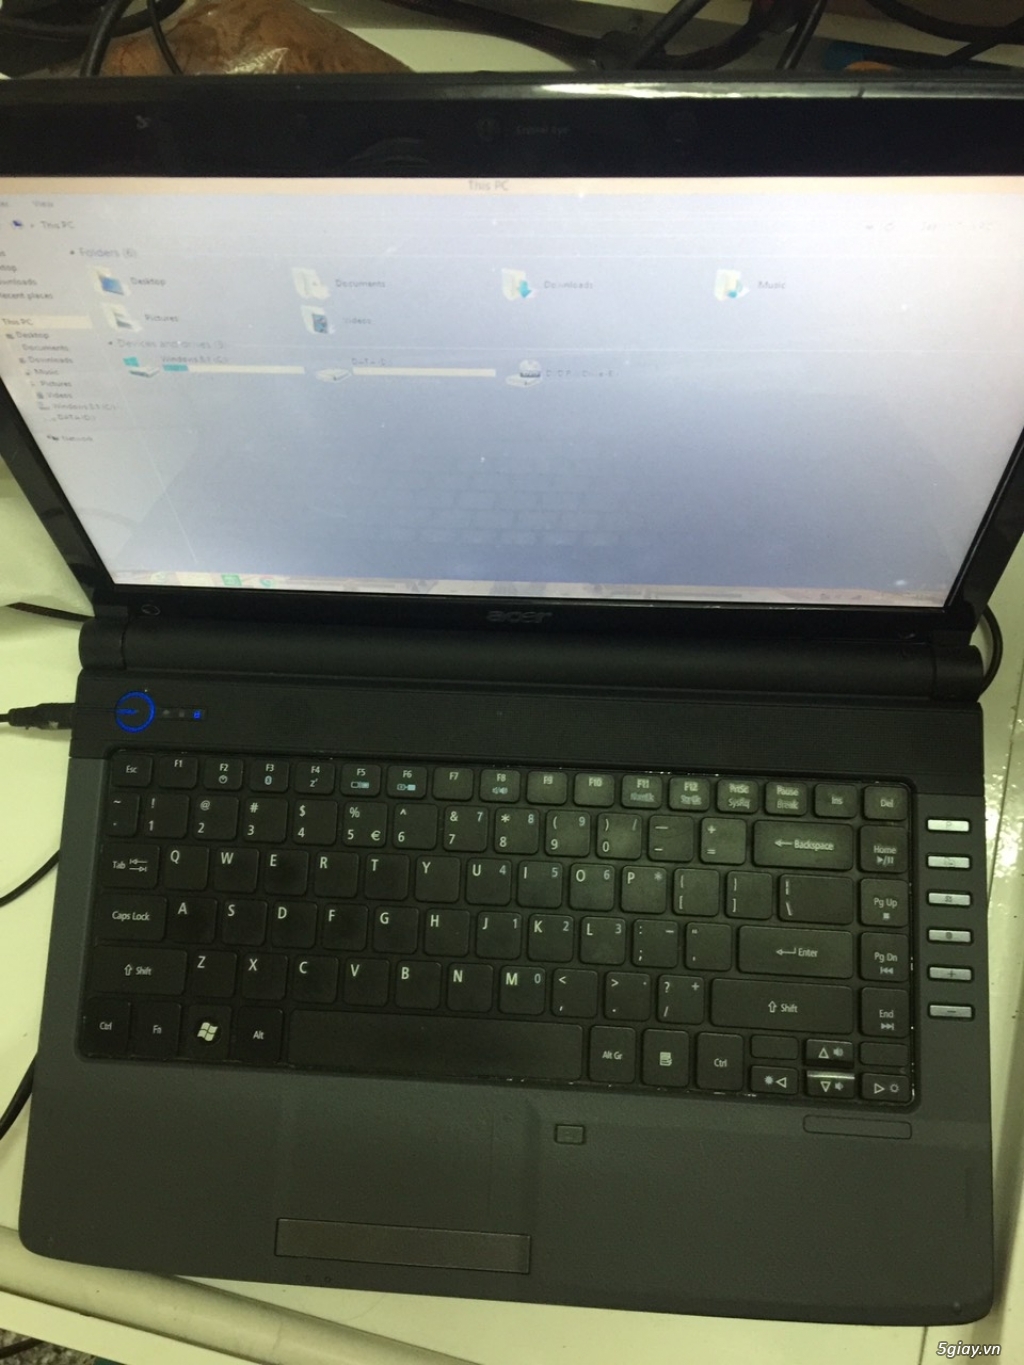 Thanh lý Laptop Acer 4736z còn mới cáu